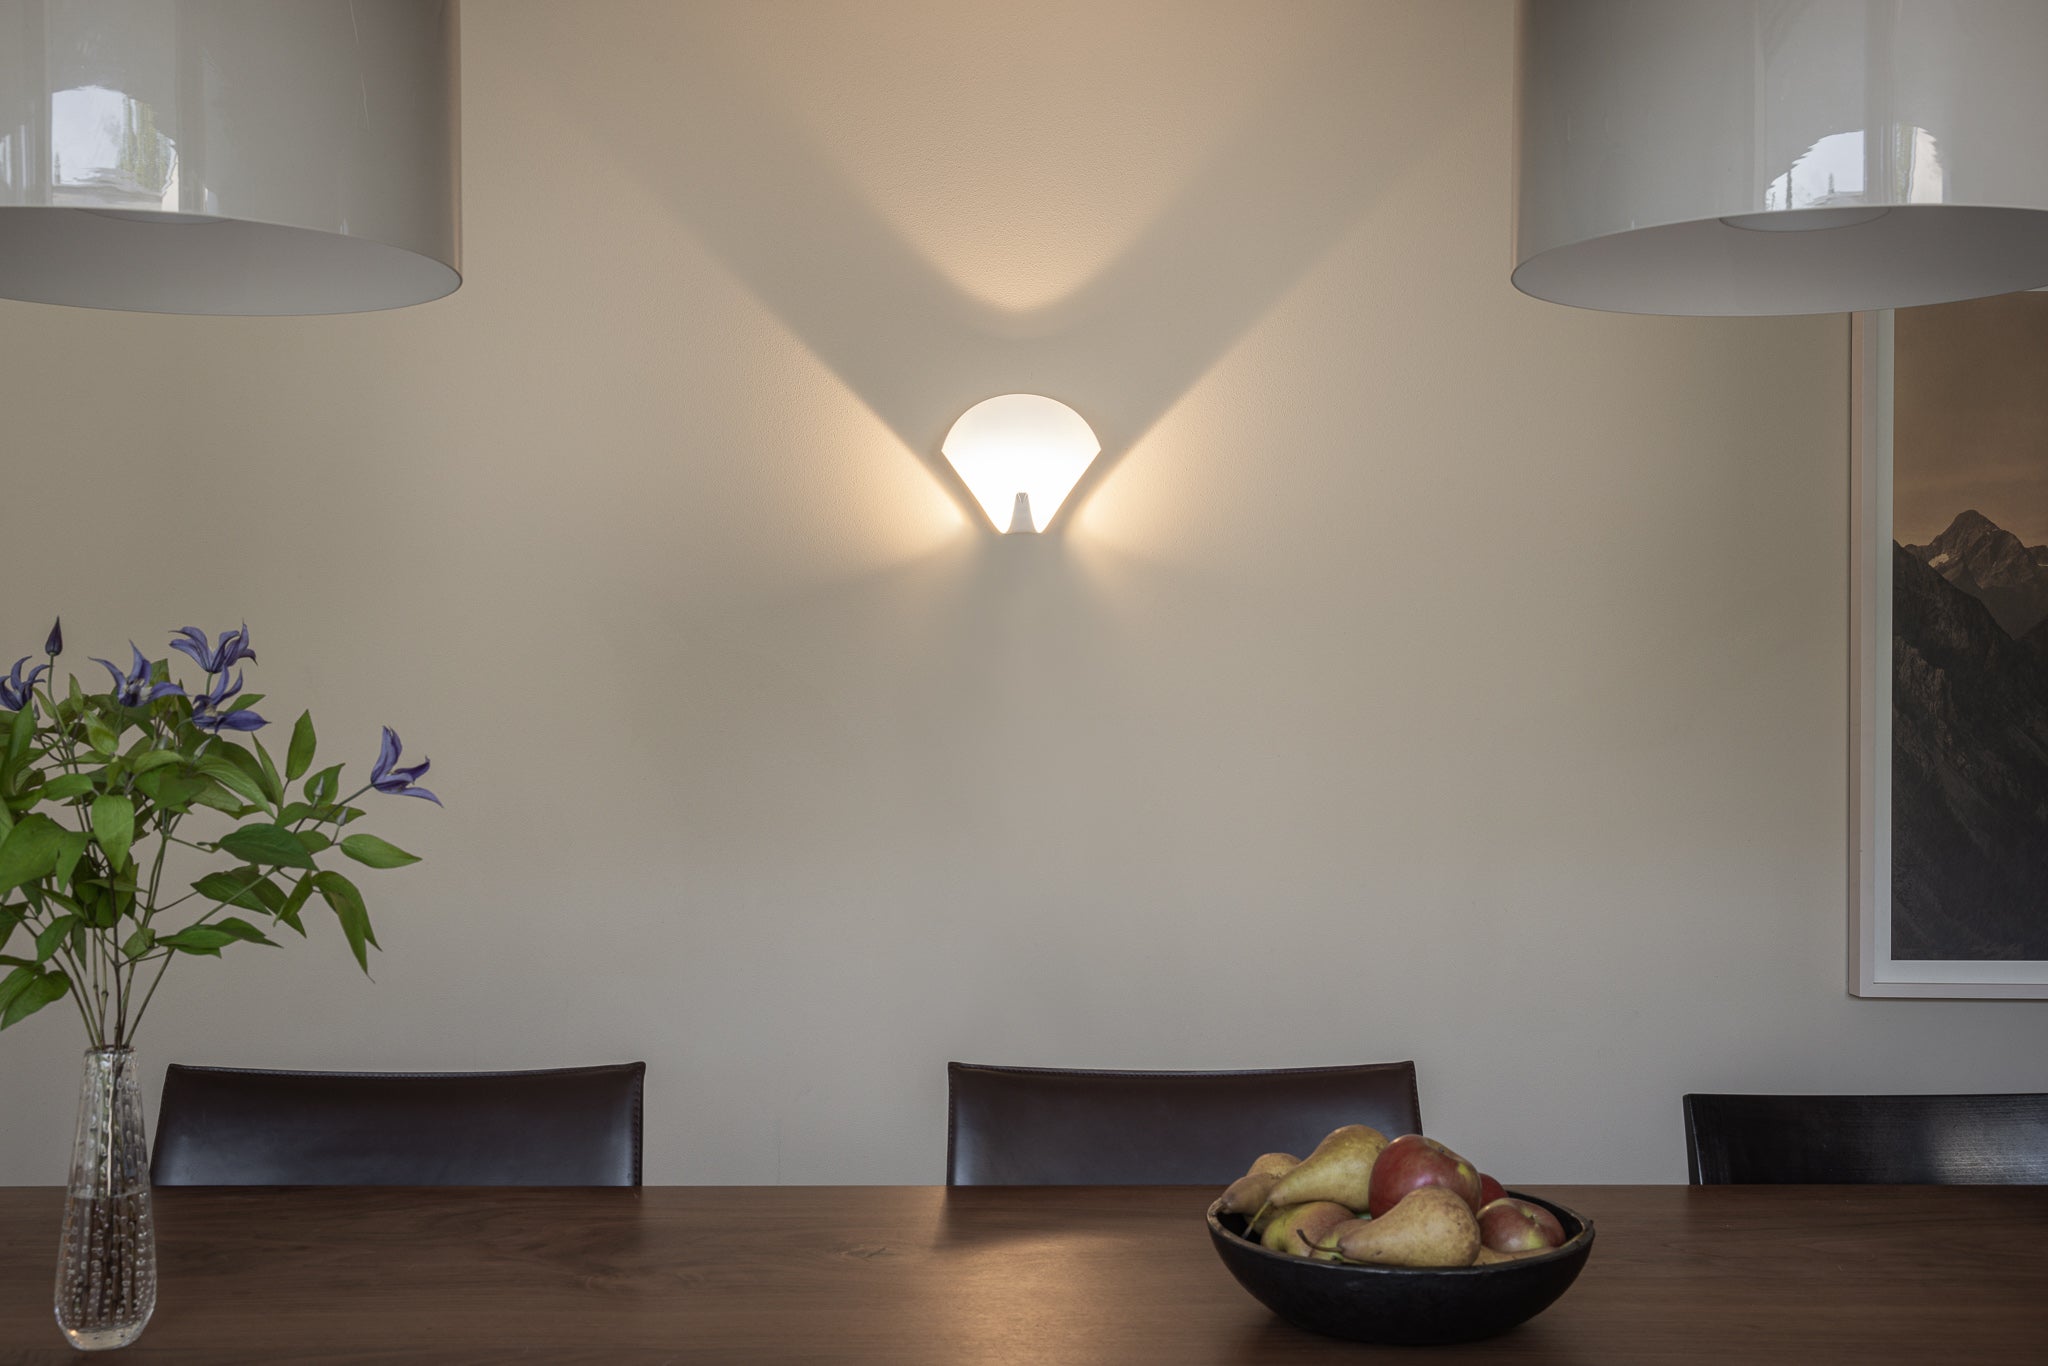 Peacock Wandleuchte in einem Esszimmer mit Tisch und Obstschale, schönes Lichtspiel des Wandskulptur